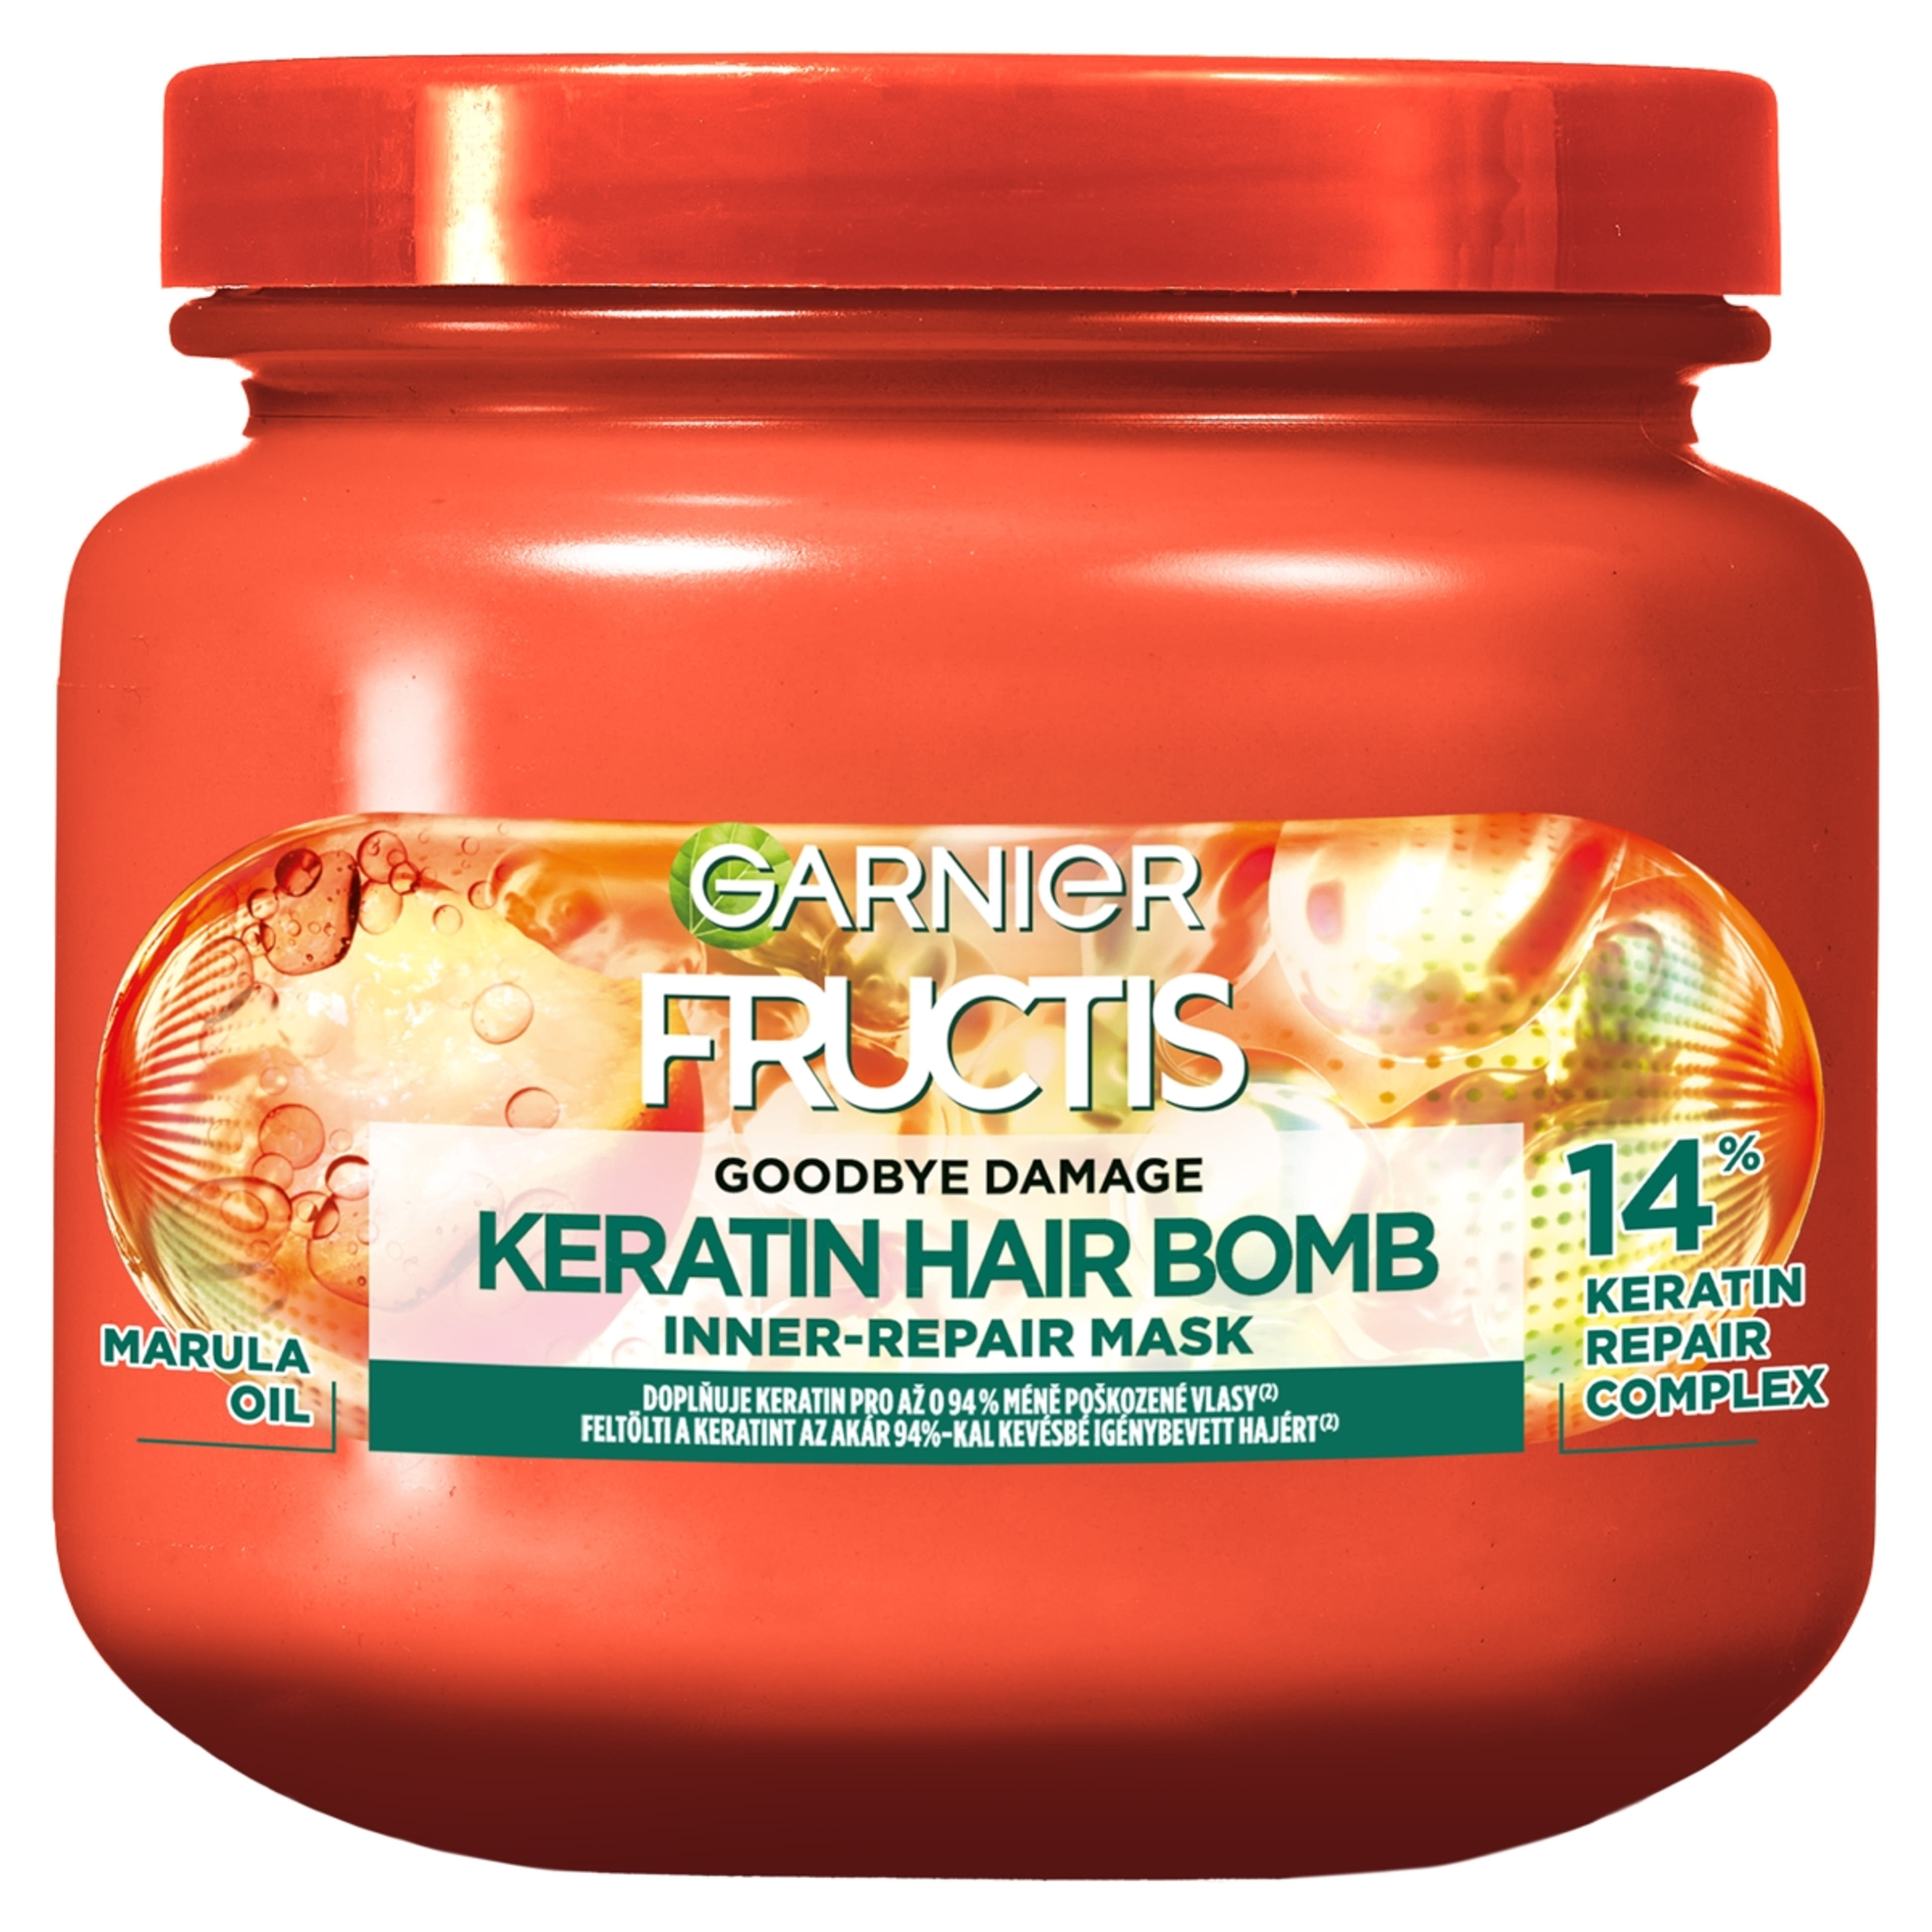 Garnier Fructis Goodbye Damage Keratin Hair Bomb hajmaszk - 320 ml-2